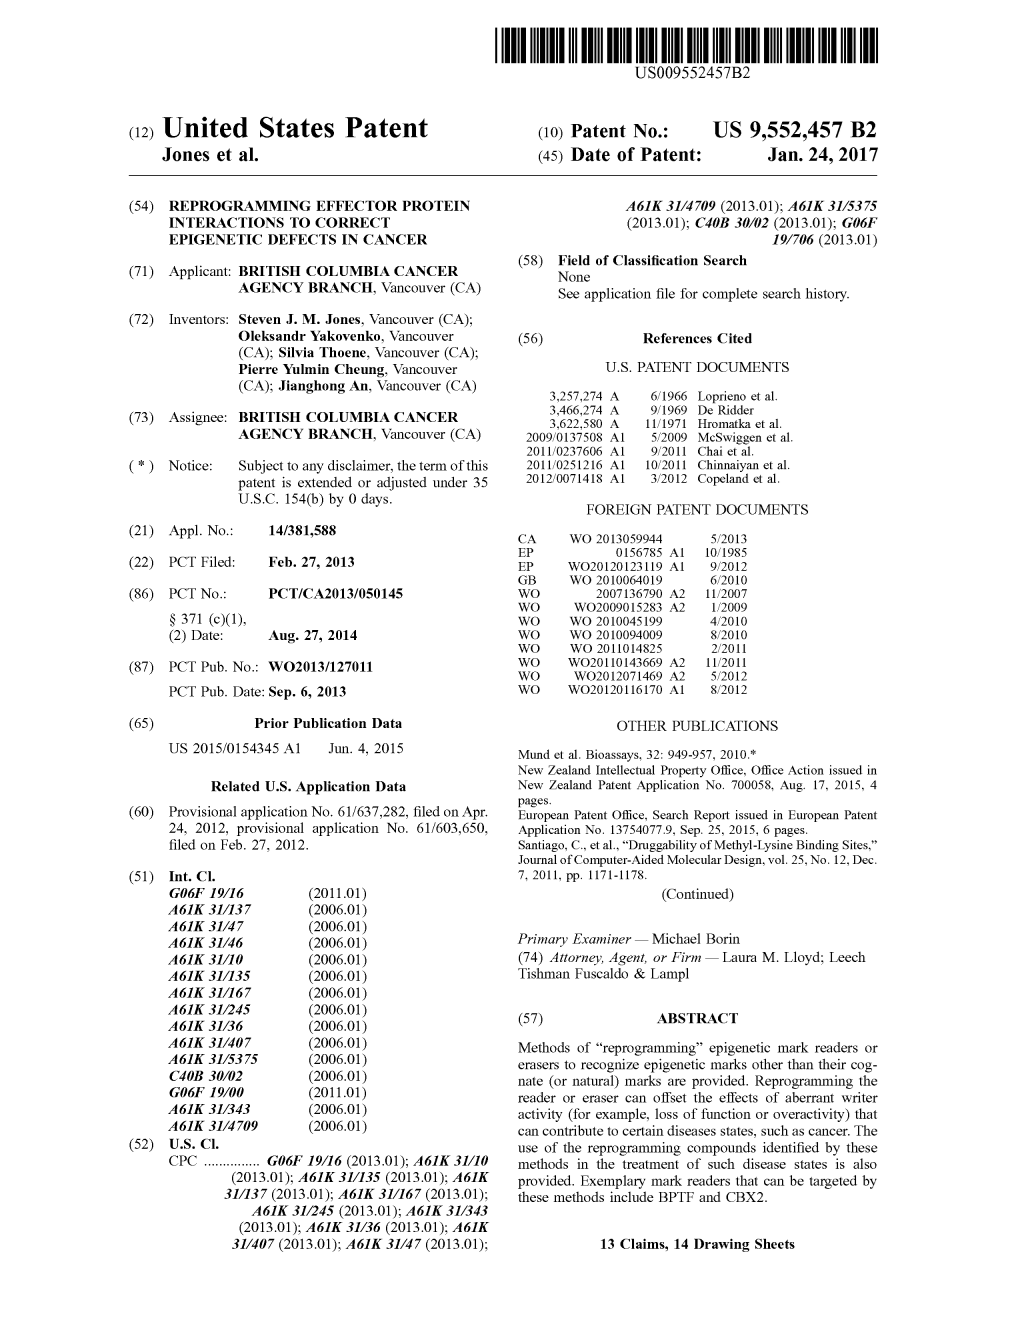 (12) United States Patent (10) Patent No.: US 9,552.457 B2 Jones Et Al